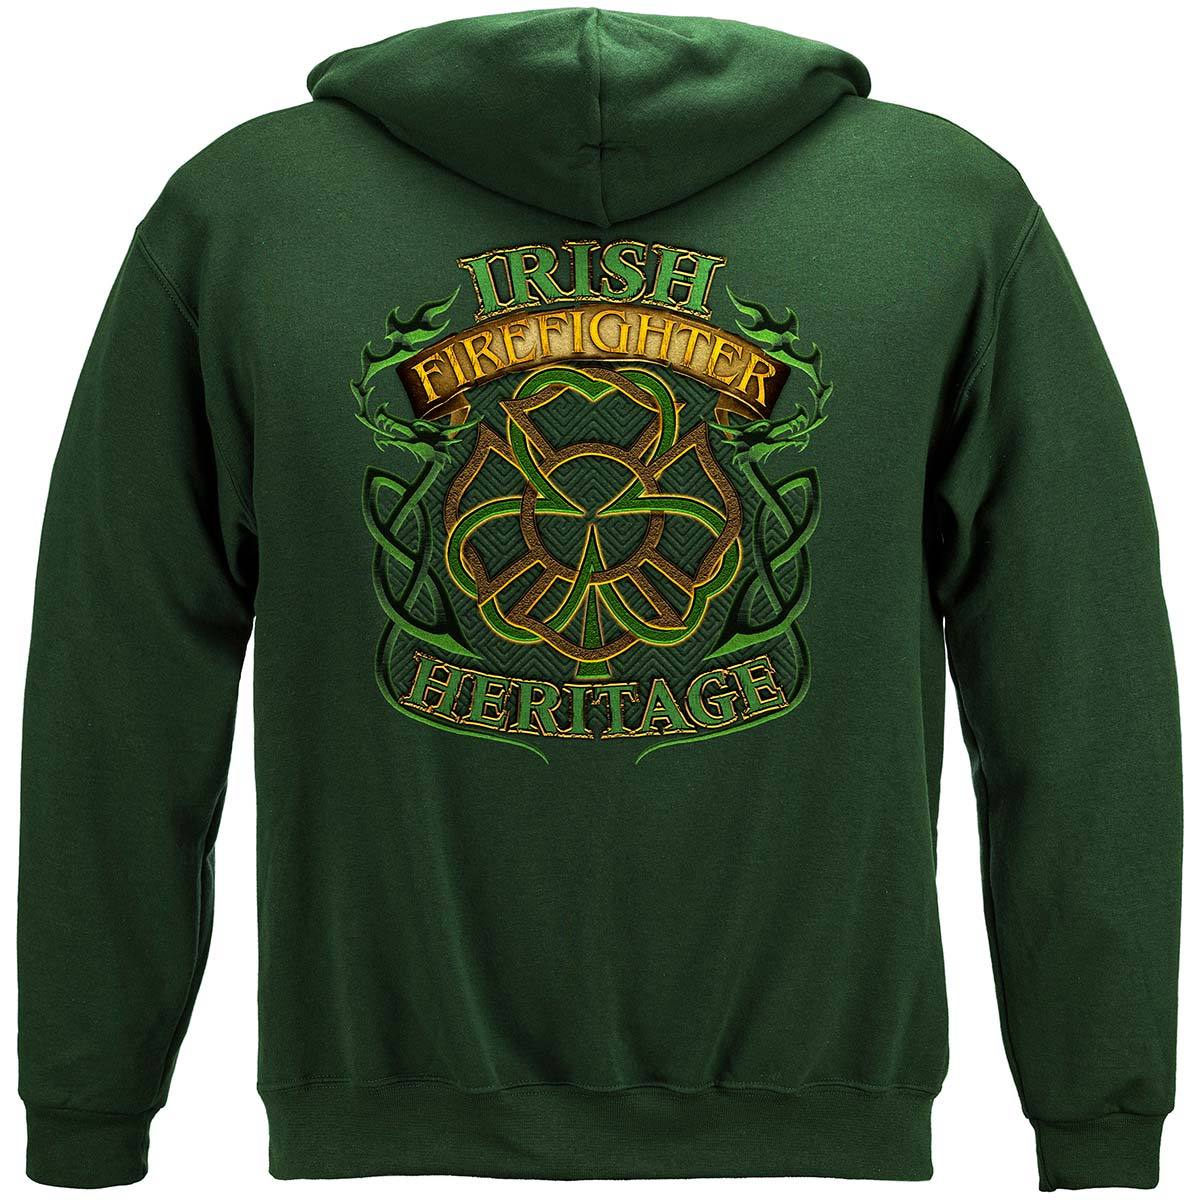 Irish Firefighter Premium Hooded Sweat Shirt